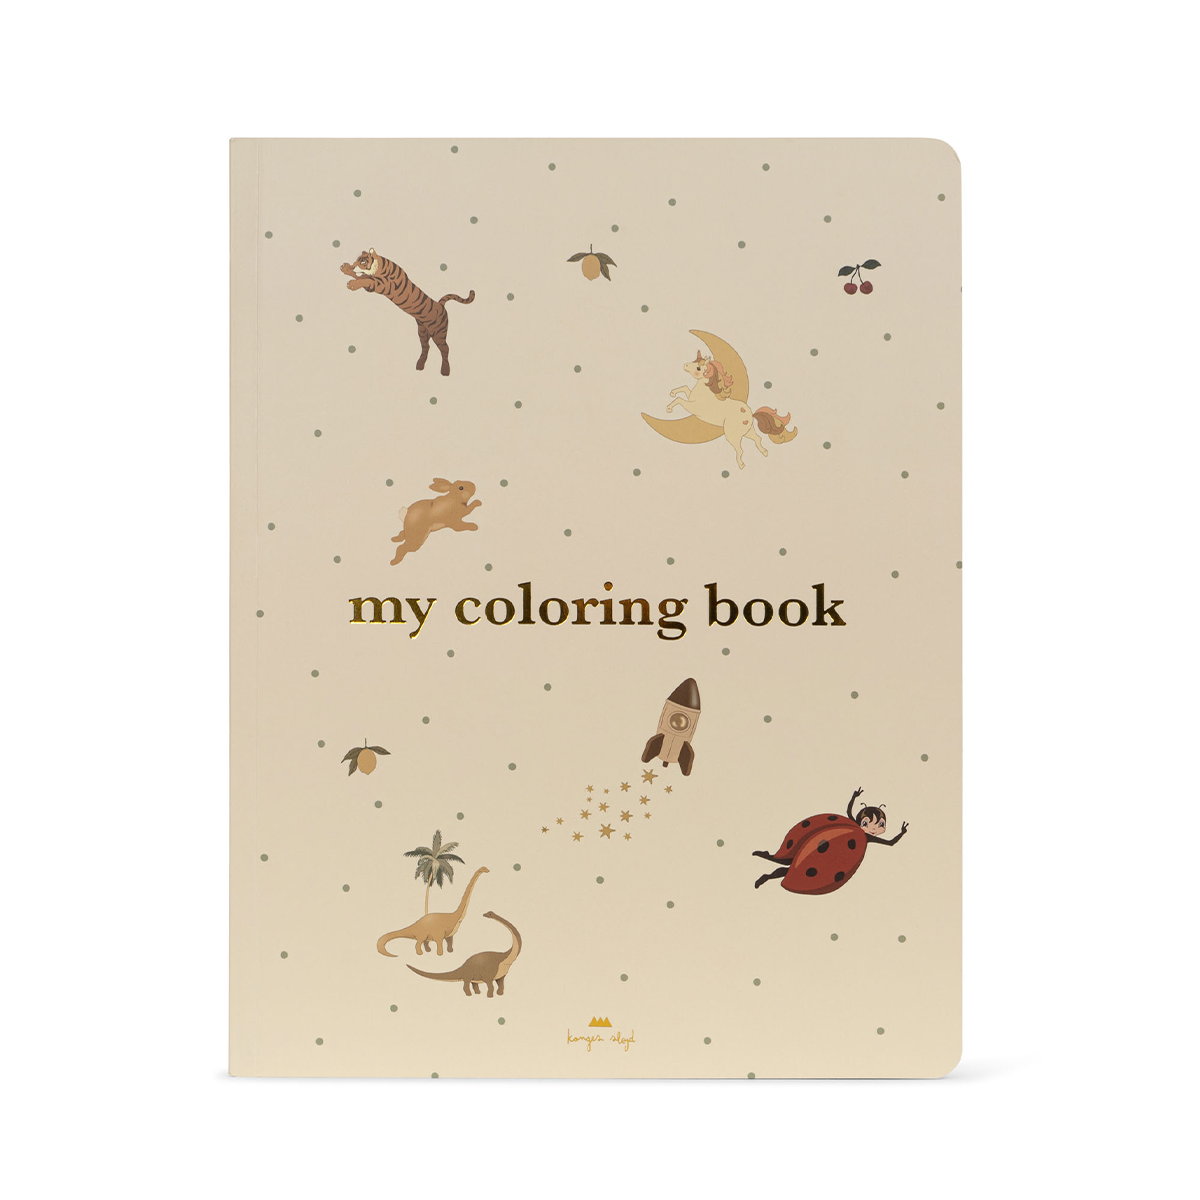 Is jouw kleintje een kunstenaar in spe? Dan is dit leuke kleurboek My coloring book van Konges Slojd een must have voor op koude, regenachtige dagen of voor wanneer je kindje zin heeft om lekker creatief bezig te zijn. VanZus